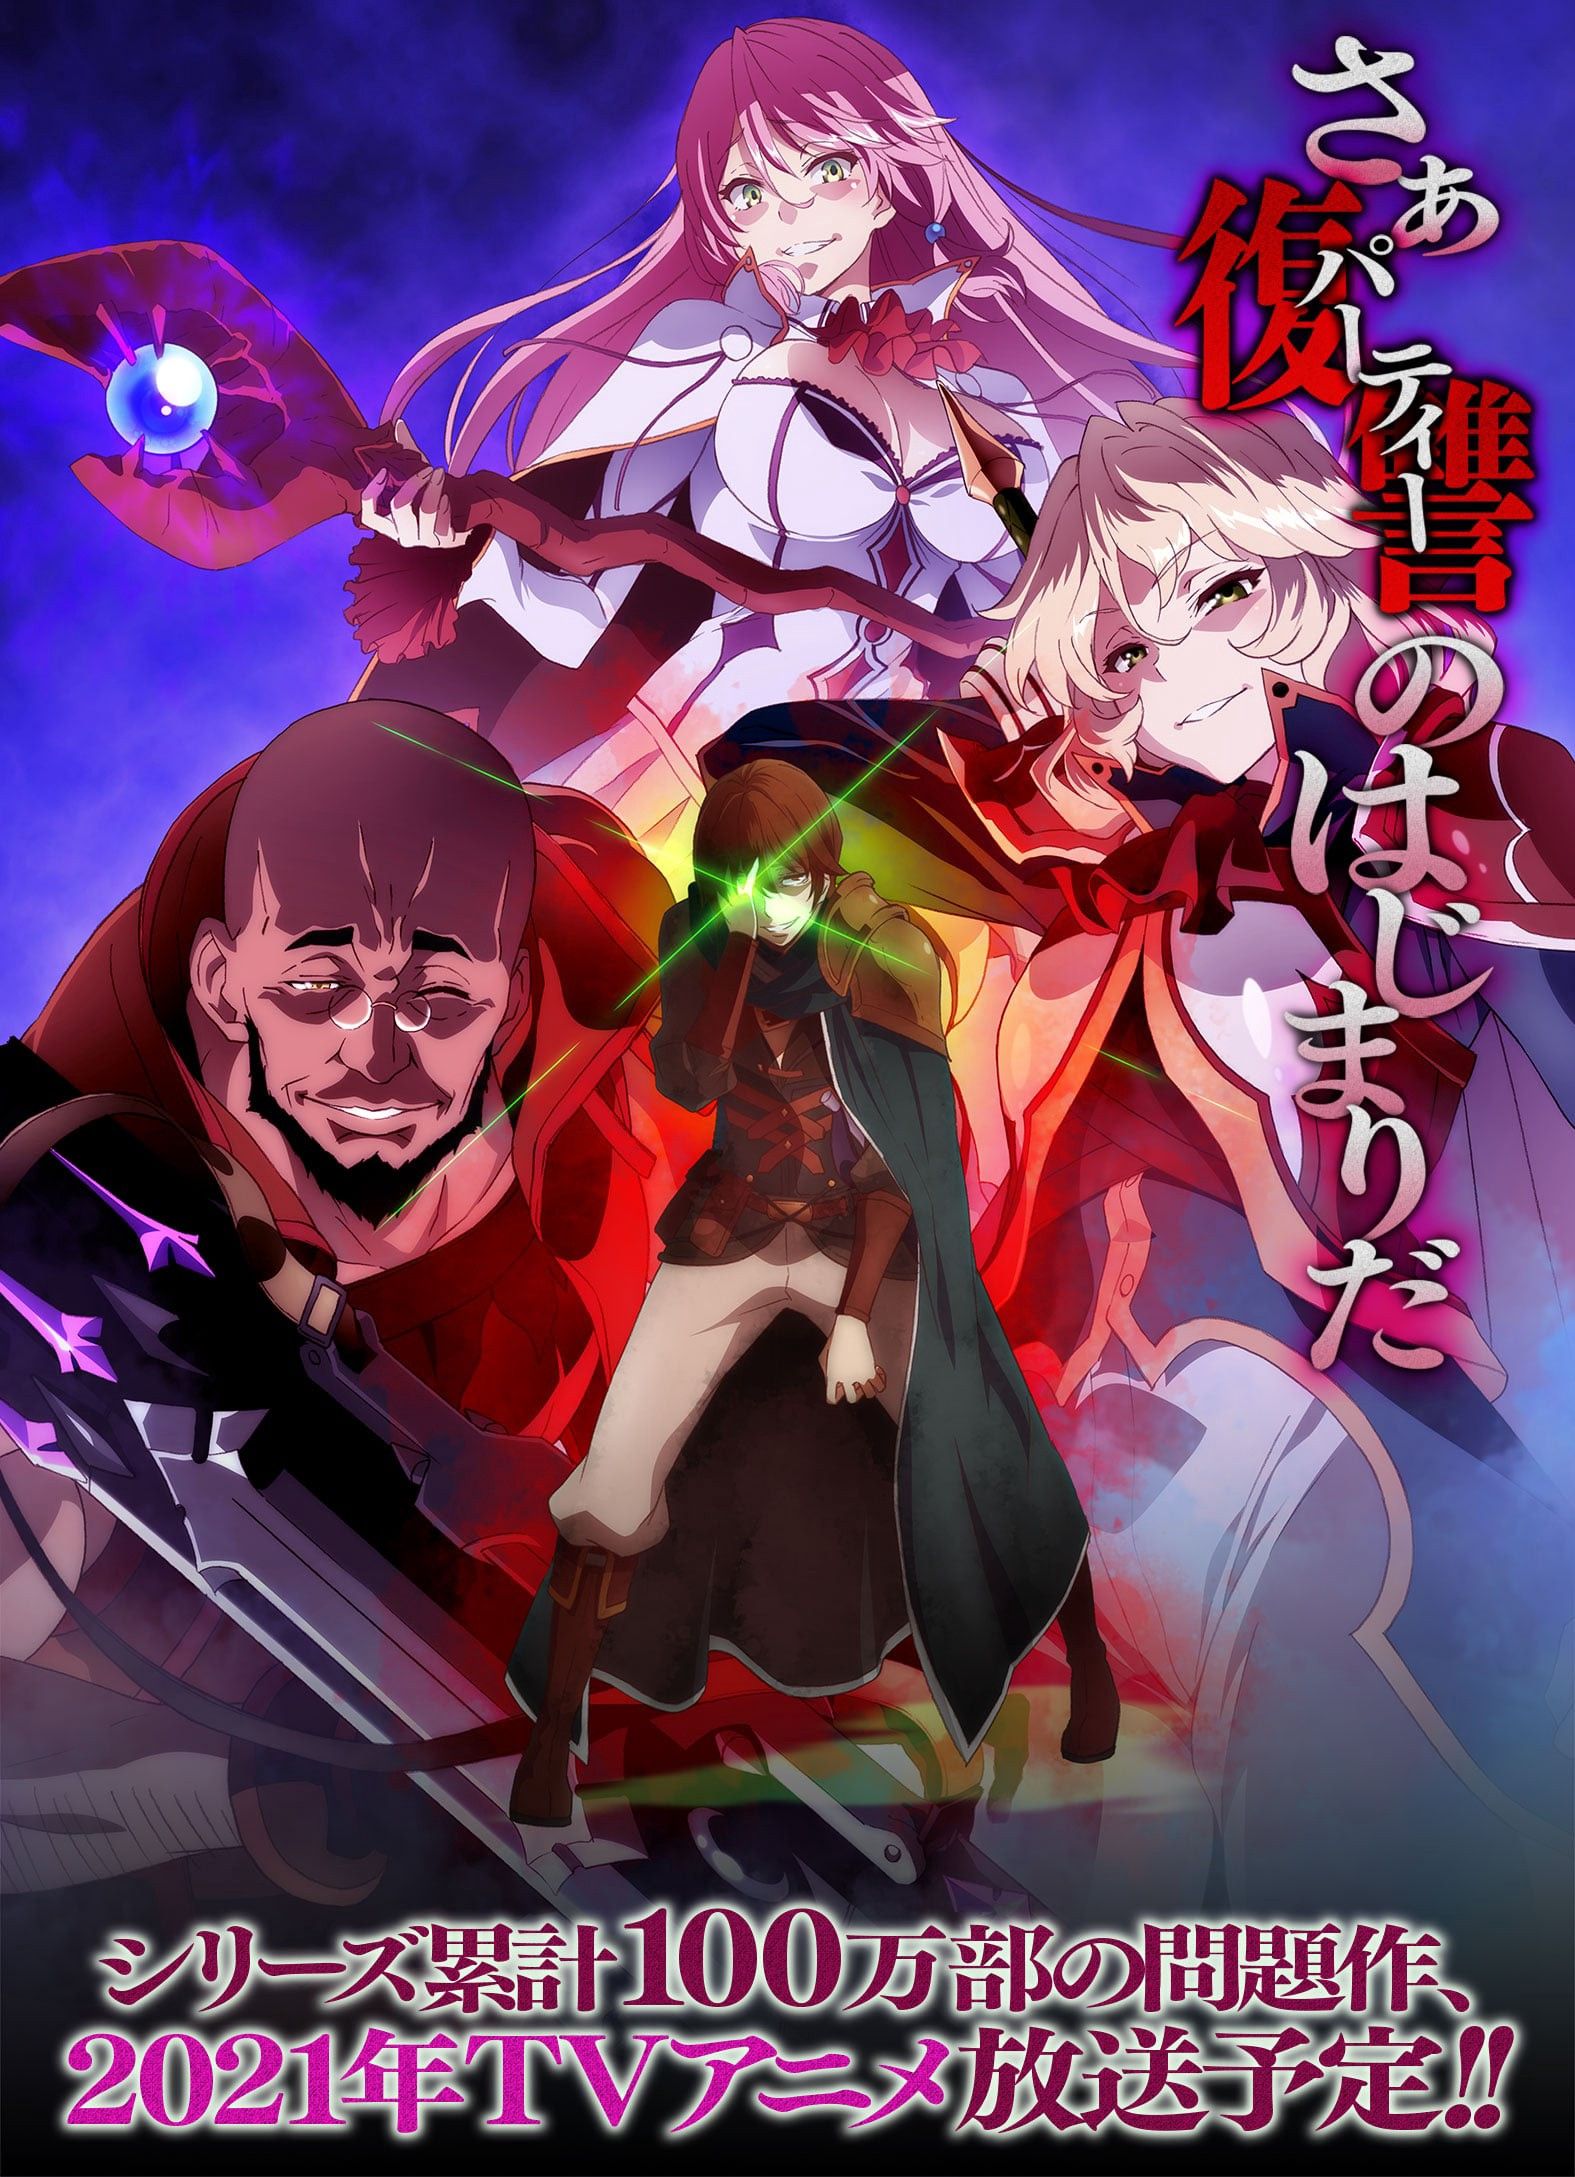 Anime Redo of Healer HD Wallpaper